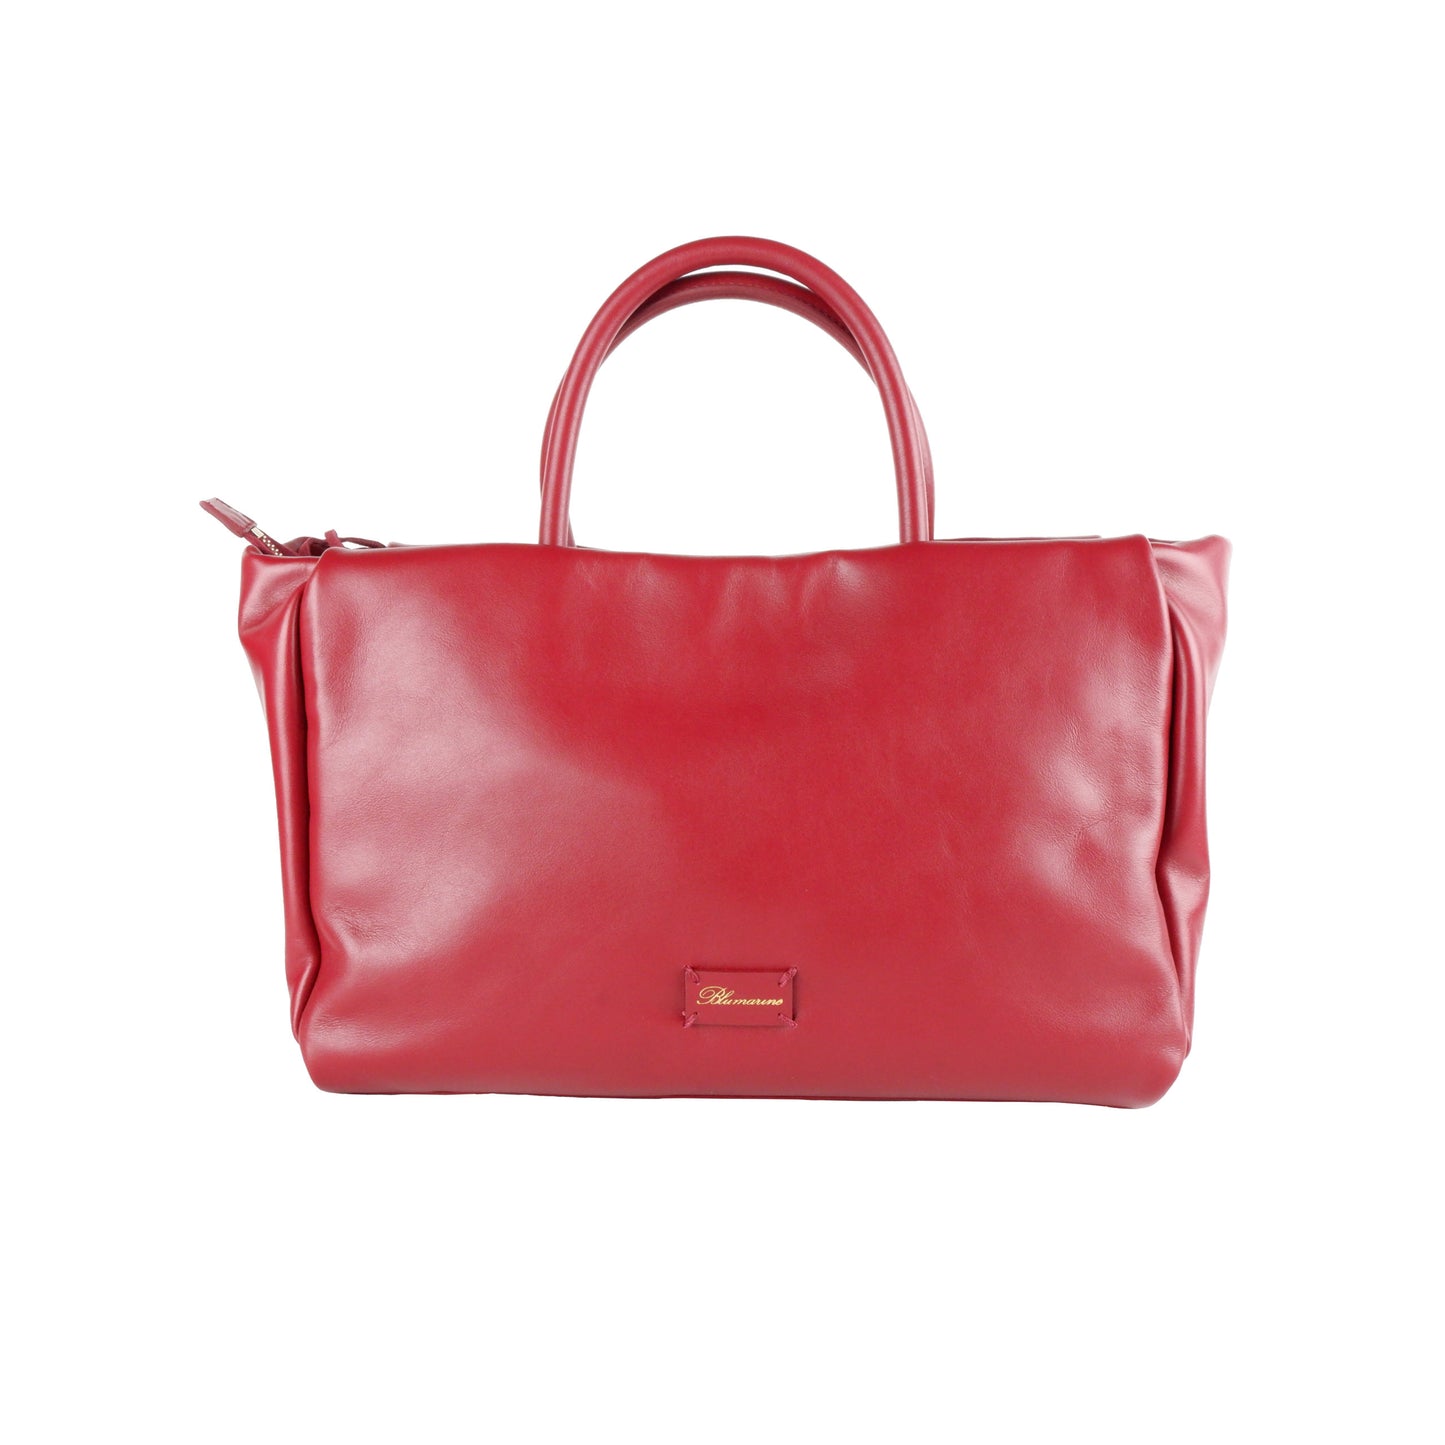 Rosso Calfskin Handbag